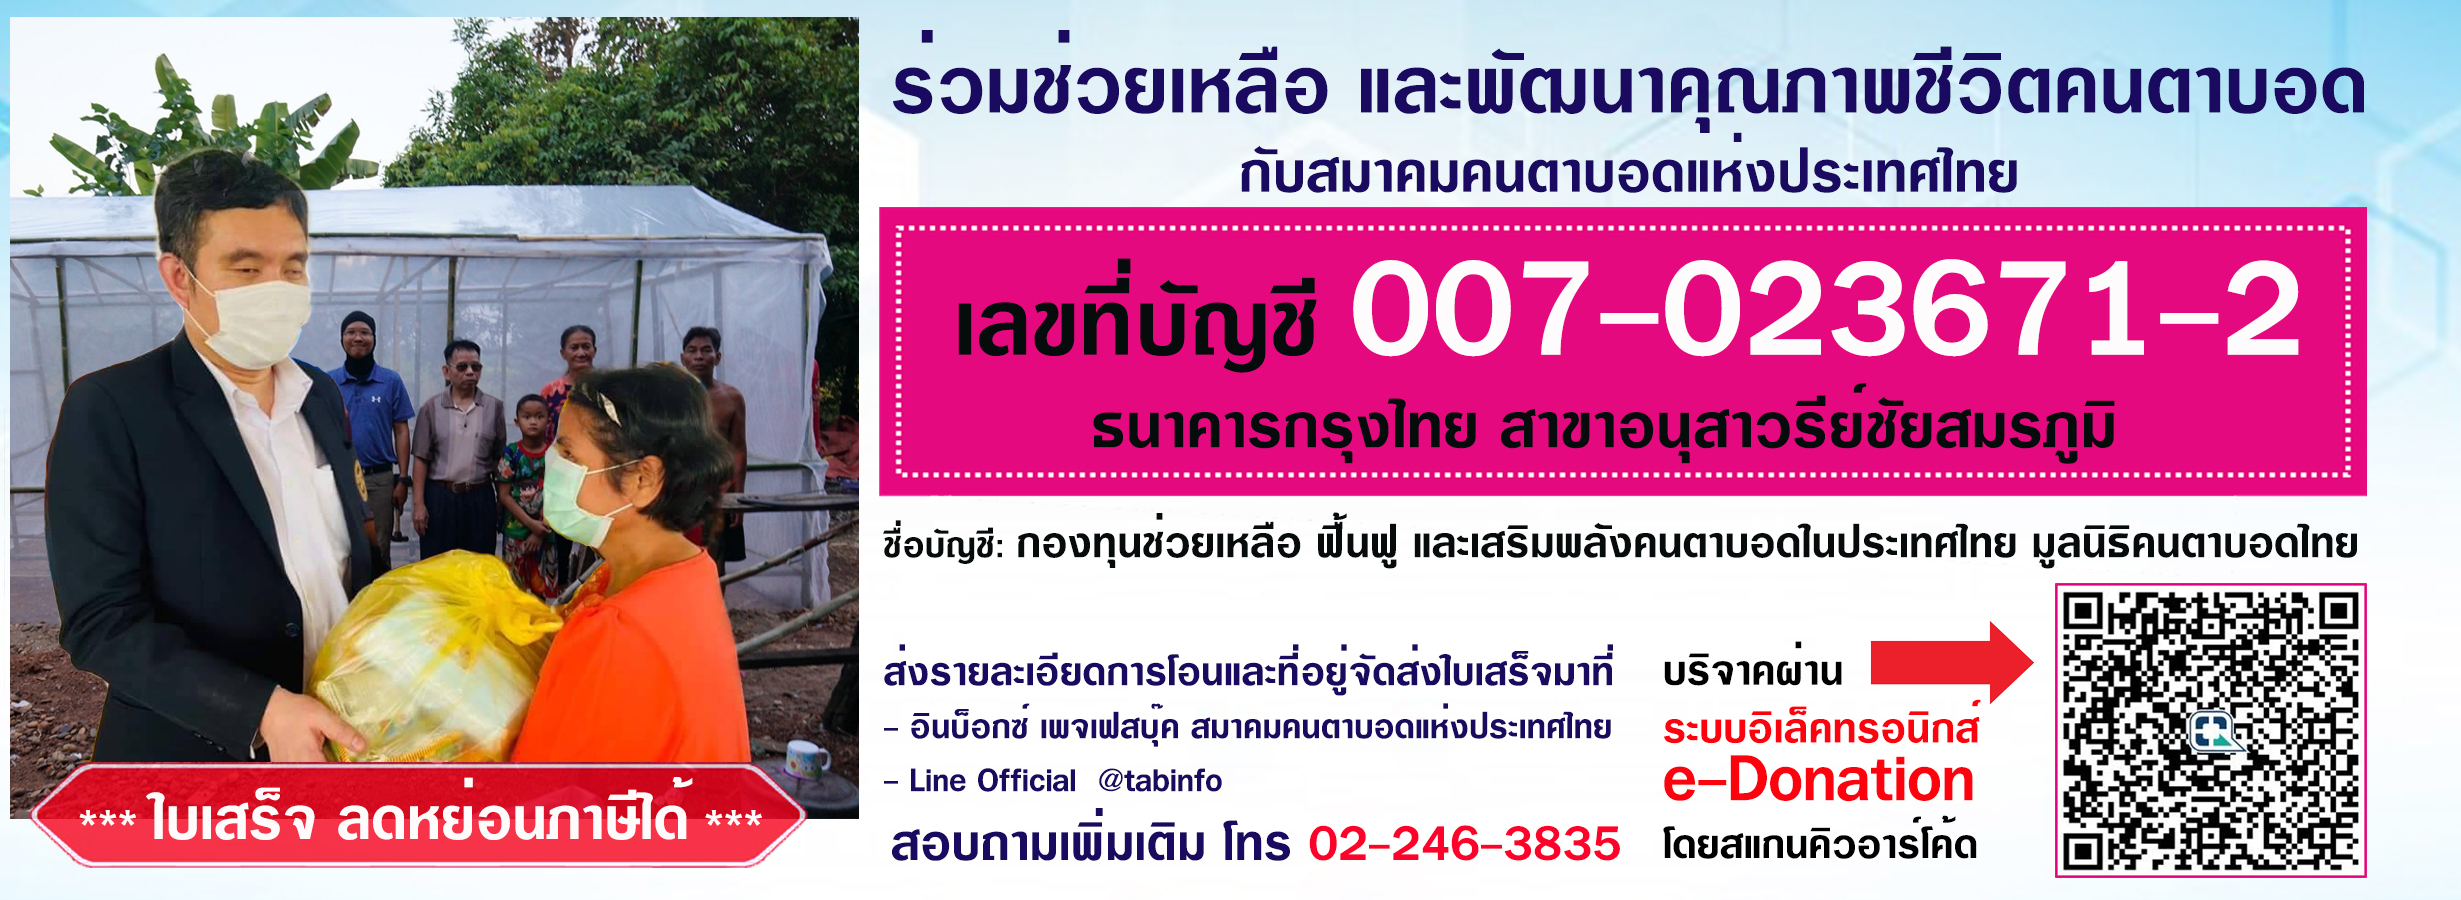 ร่วมช่วยเหลือ และพัฒนาคุณภาพชีวิตคนตาบอด เลขที่บัญชี 007-023671-2 ธนาคารกรุงไทย สาขาอนุสาวรีย์ชัยสมรภูมิ